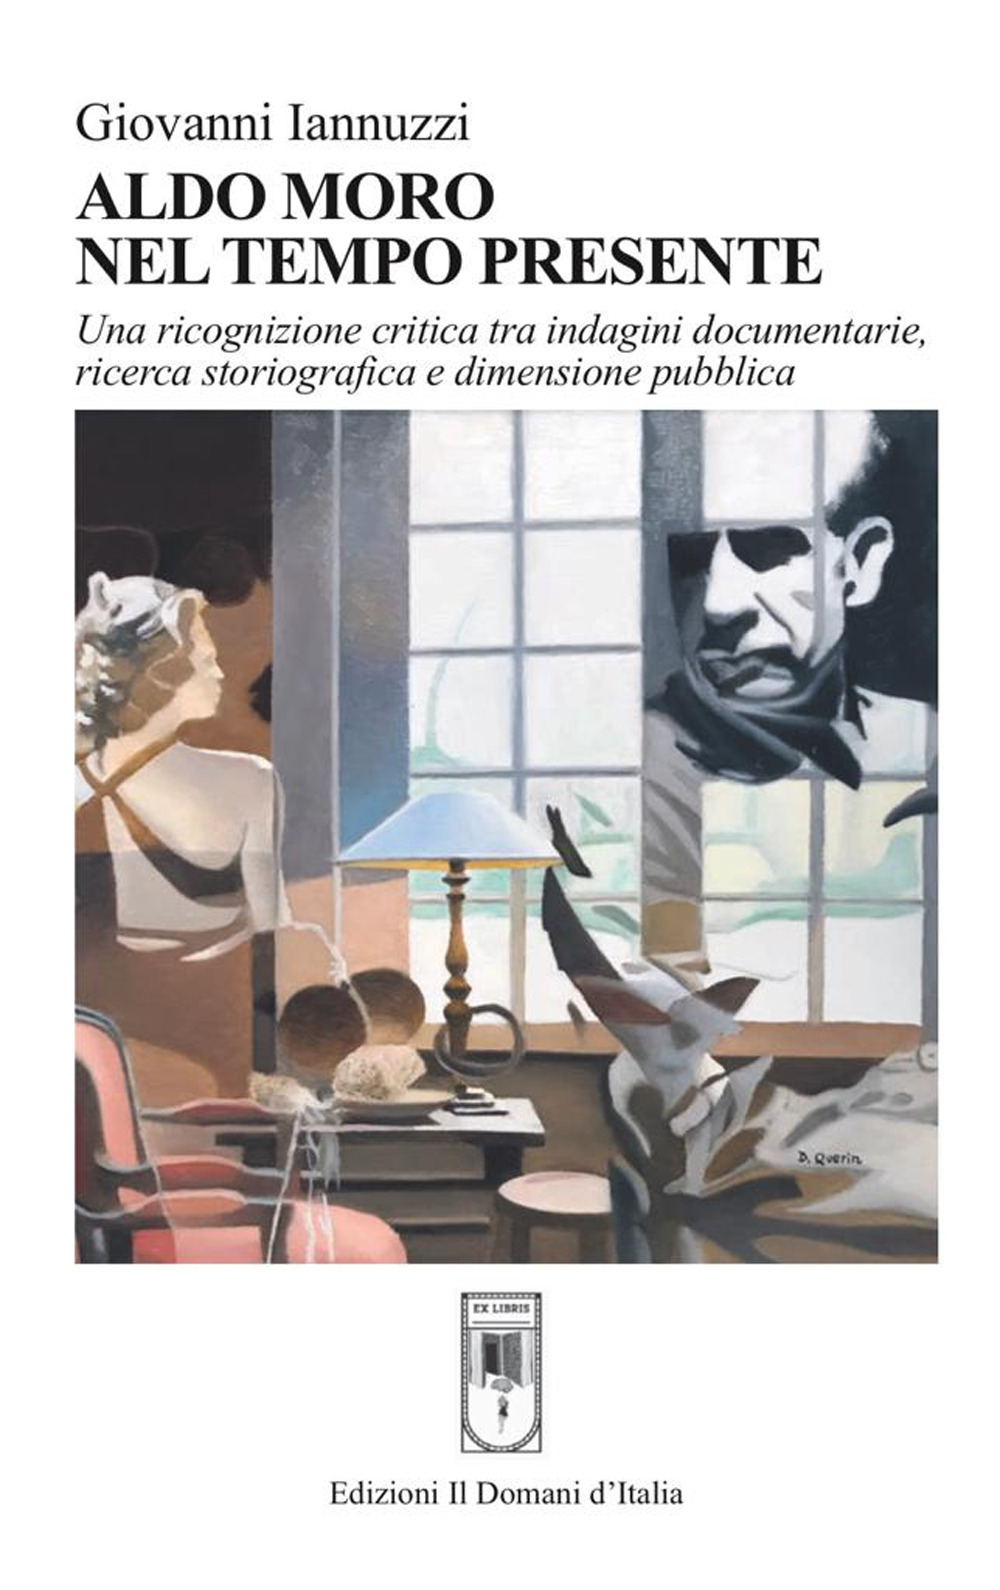 Aldo Moro nel tempo presente. Una ricognizione critica tra indagini documentarie, ricerca storiografica e dimensione pubblica